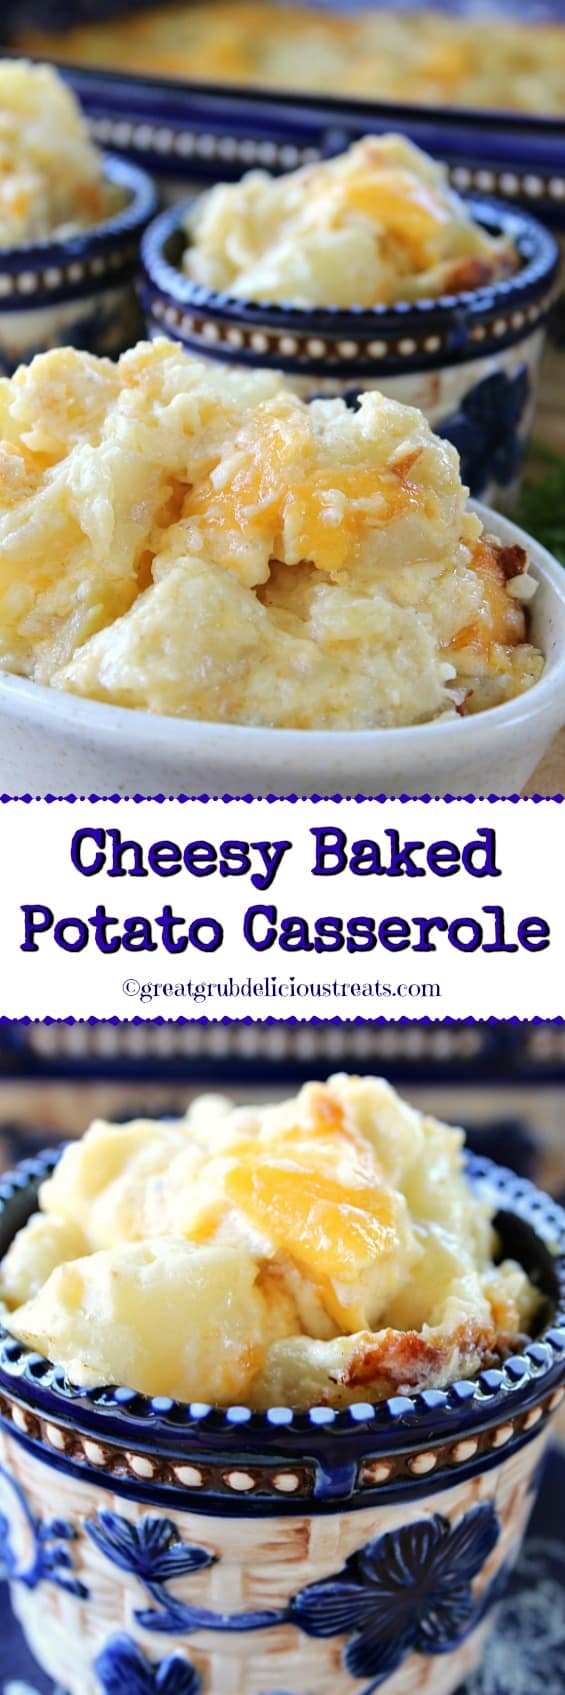 Cheesy Baked Potato Casserole